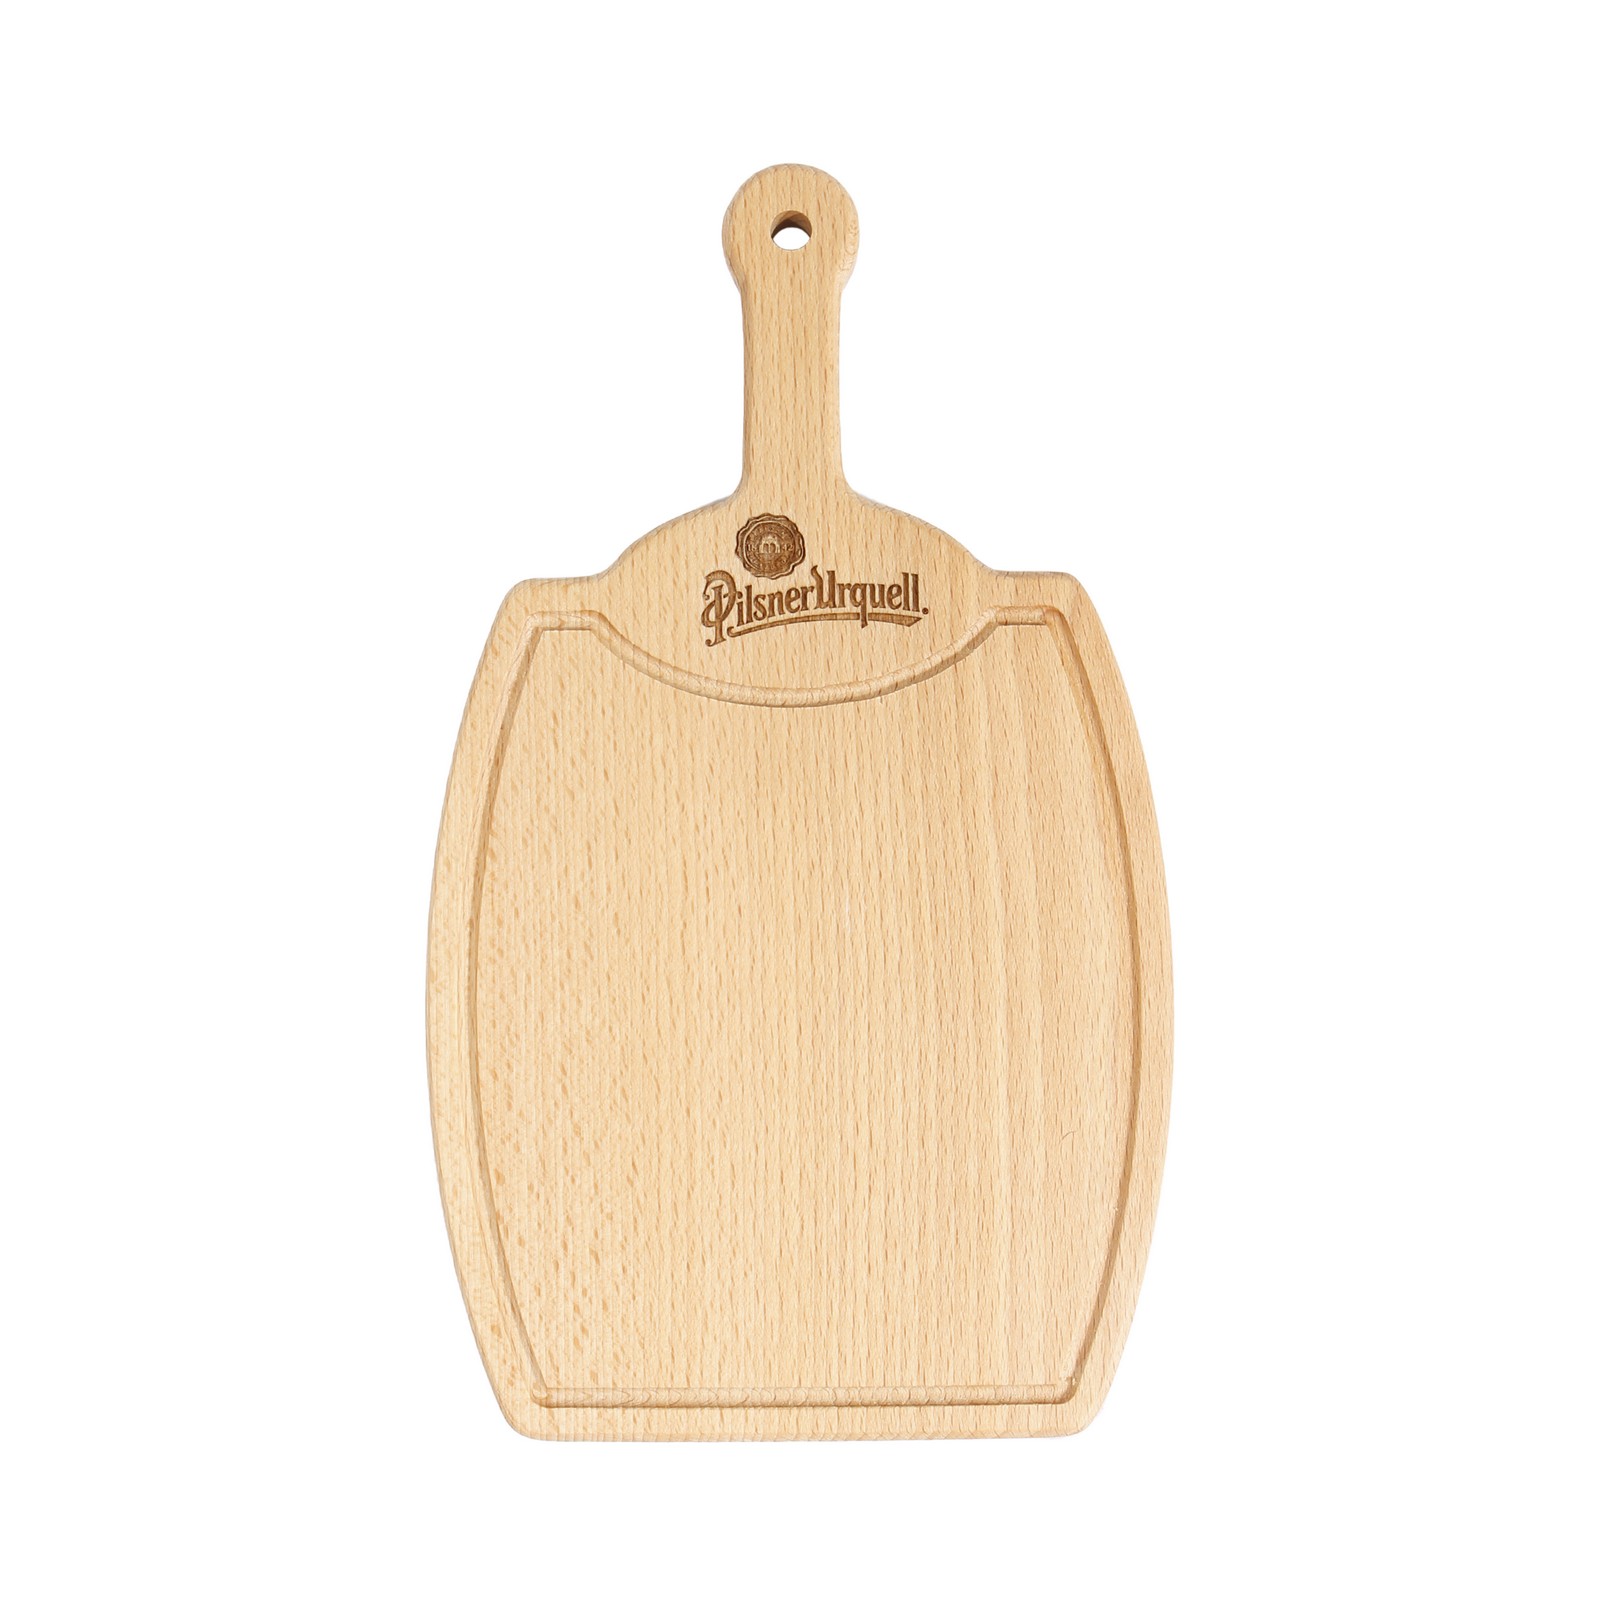 Pilsner Urquell wooden chopping board - barrel